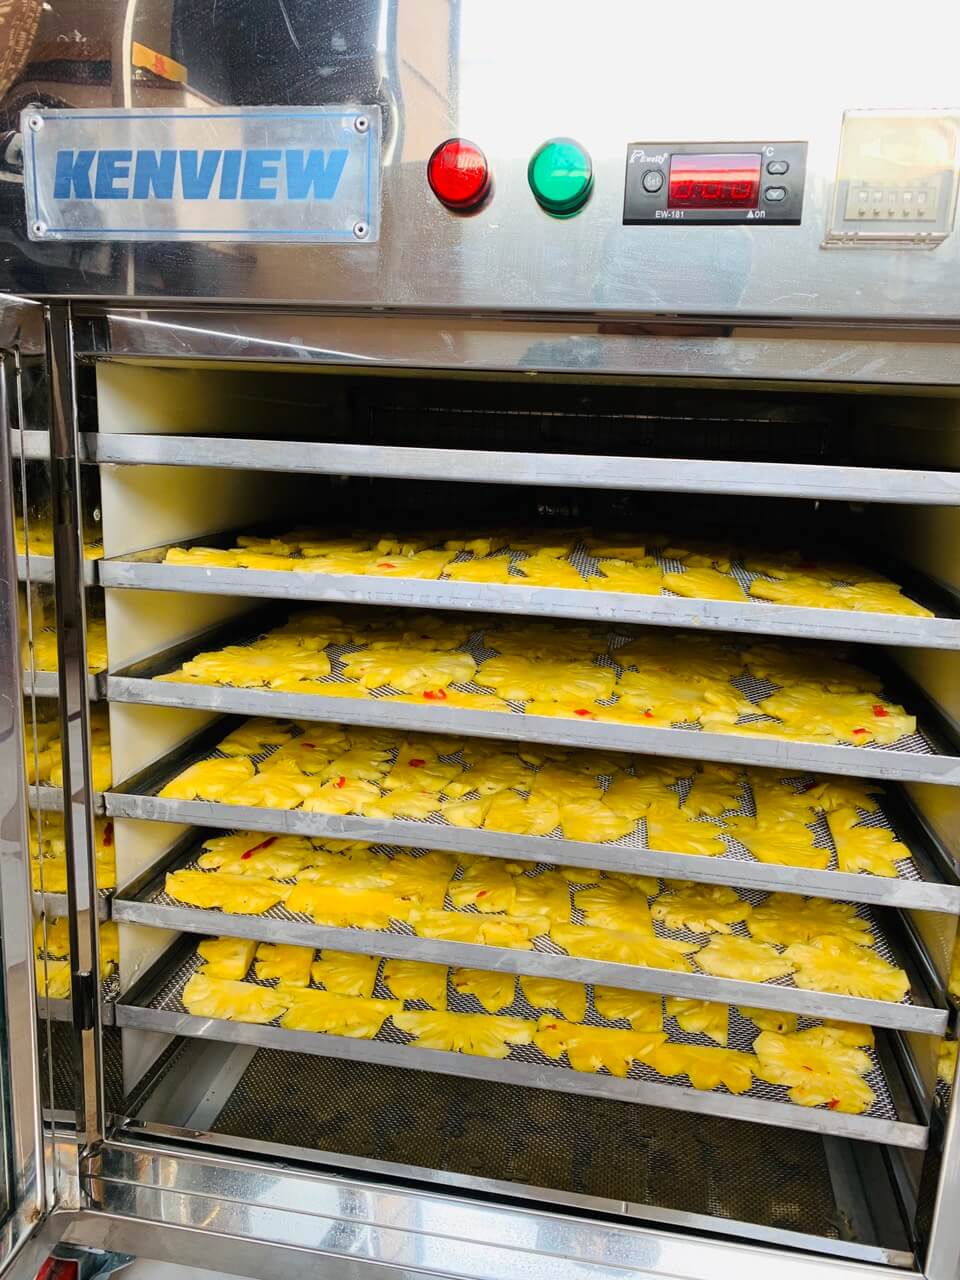 Kenview cung cấp máy sấy hoa quả mini tại Bình Phước.0978.280.912